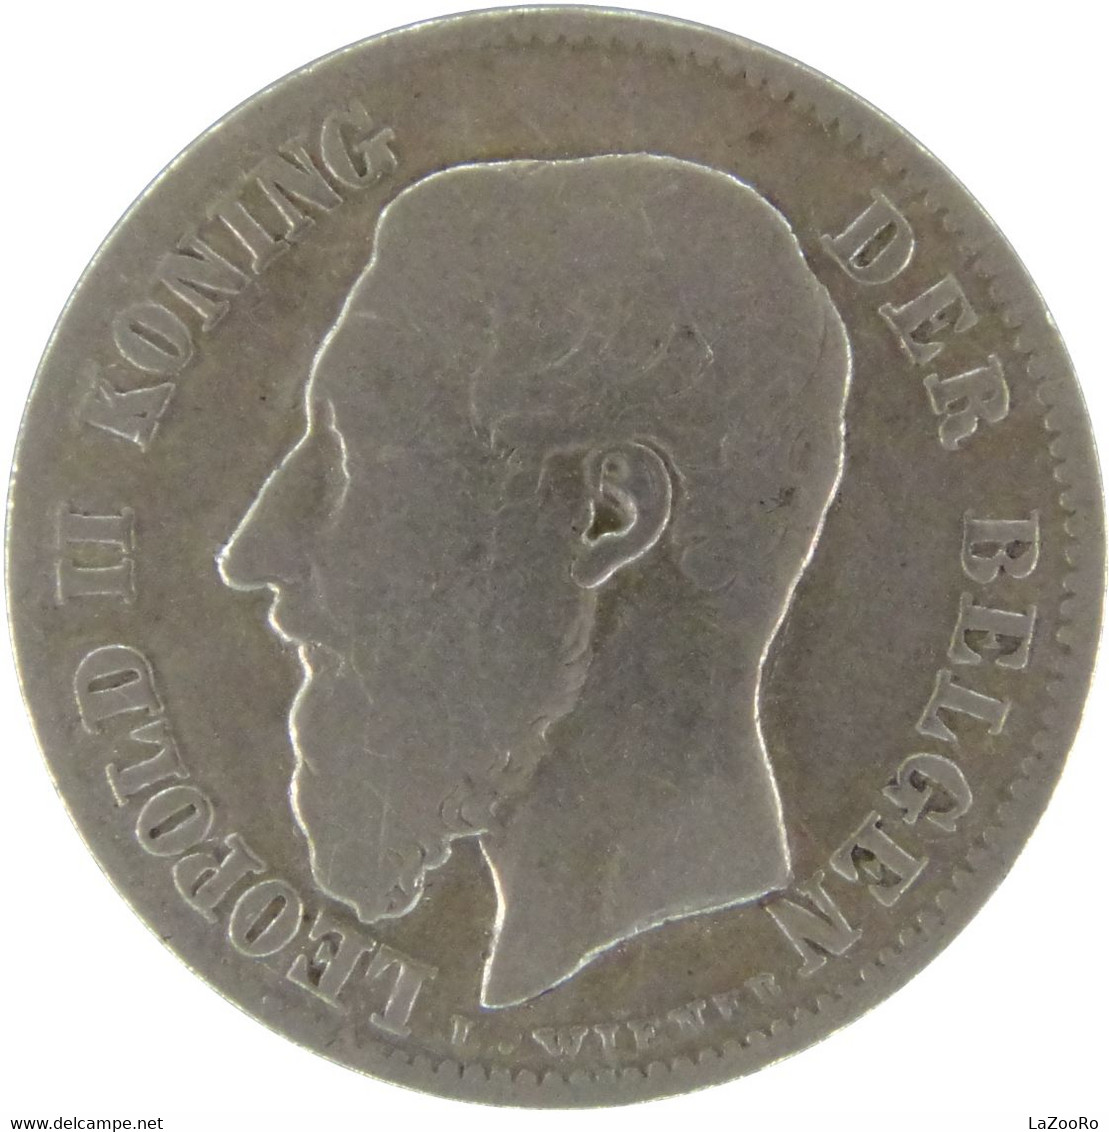 LaZooRo: Belgium 50 Centimes 1898 F / VF - Silver - 50 Cent